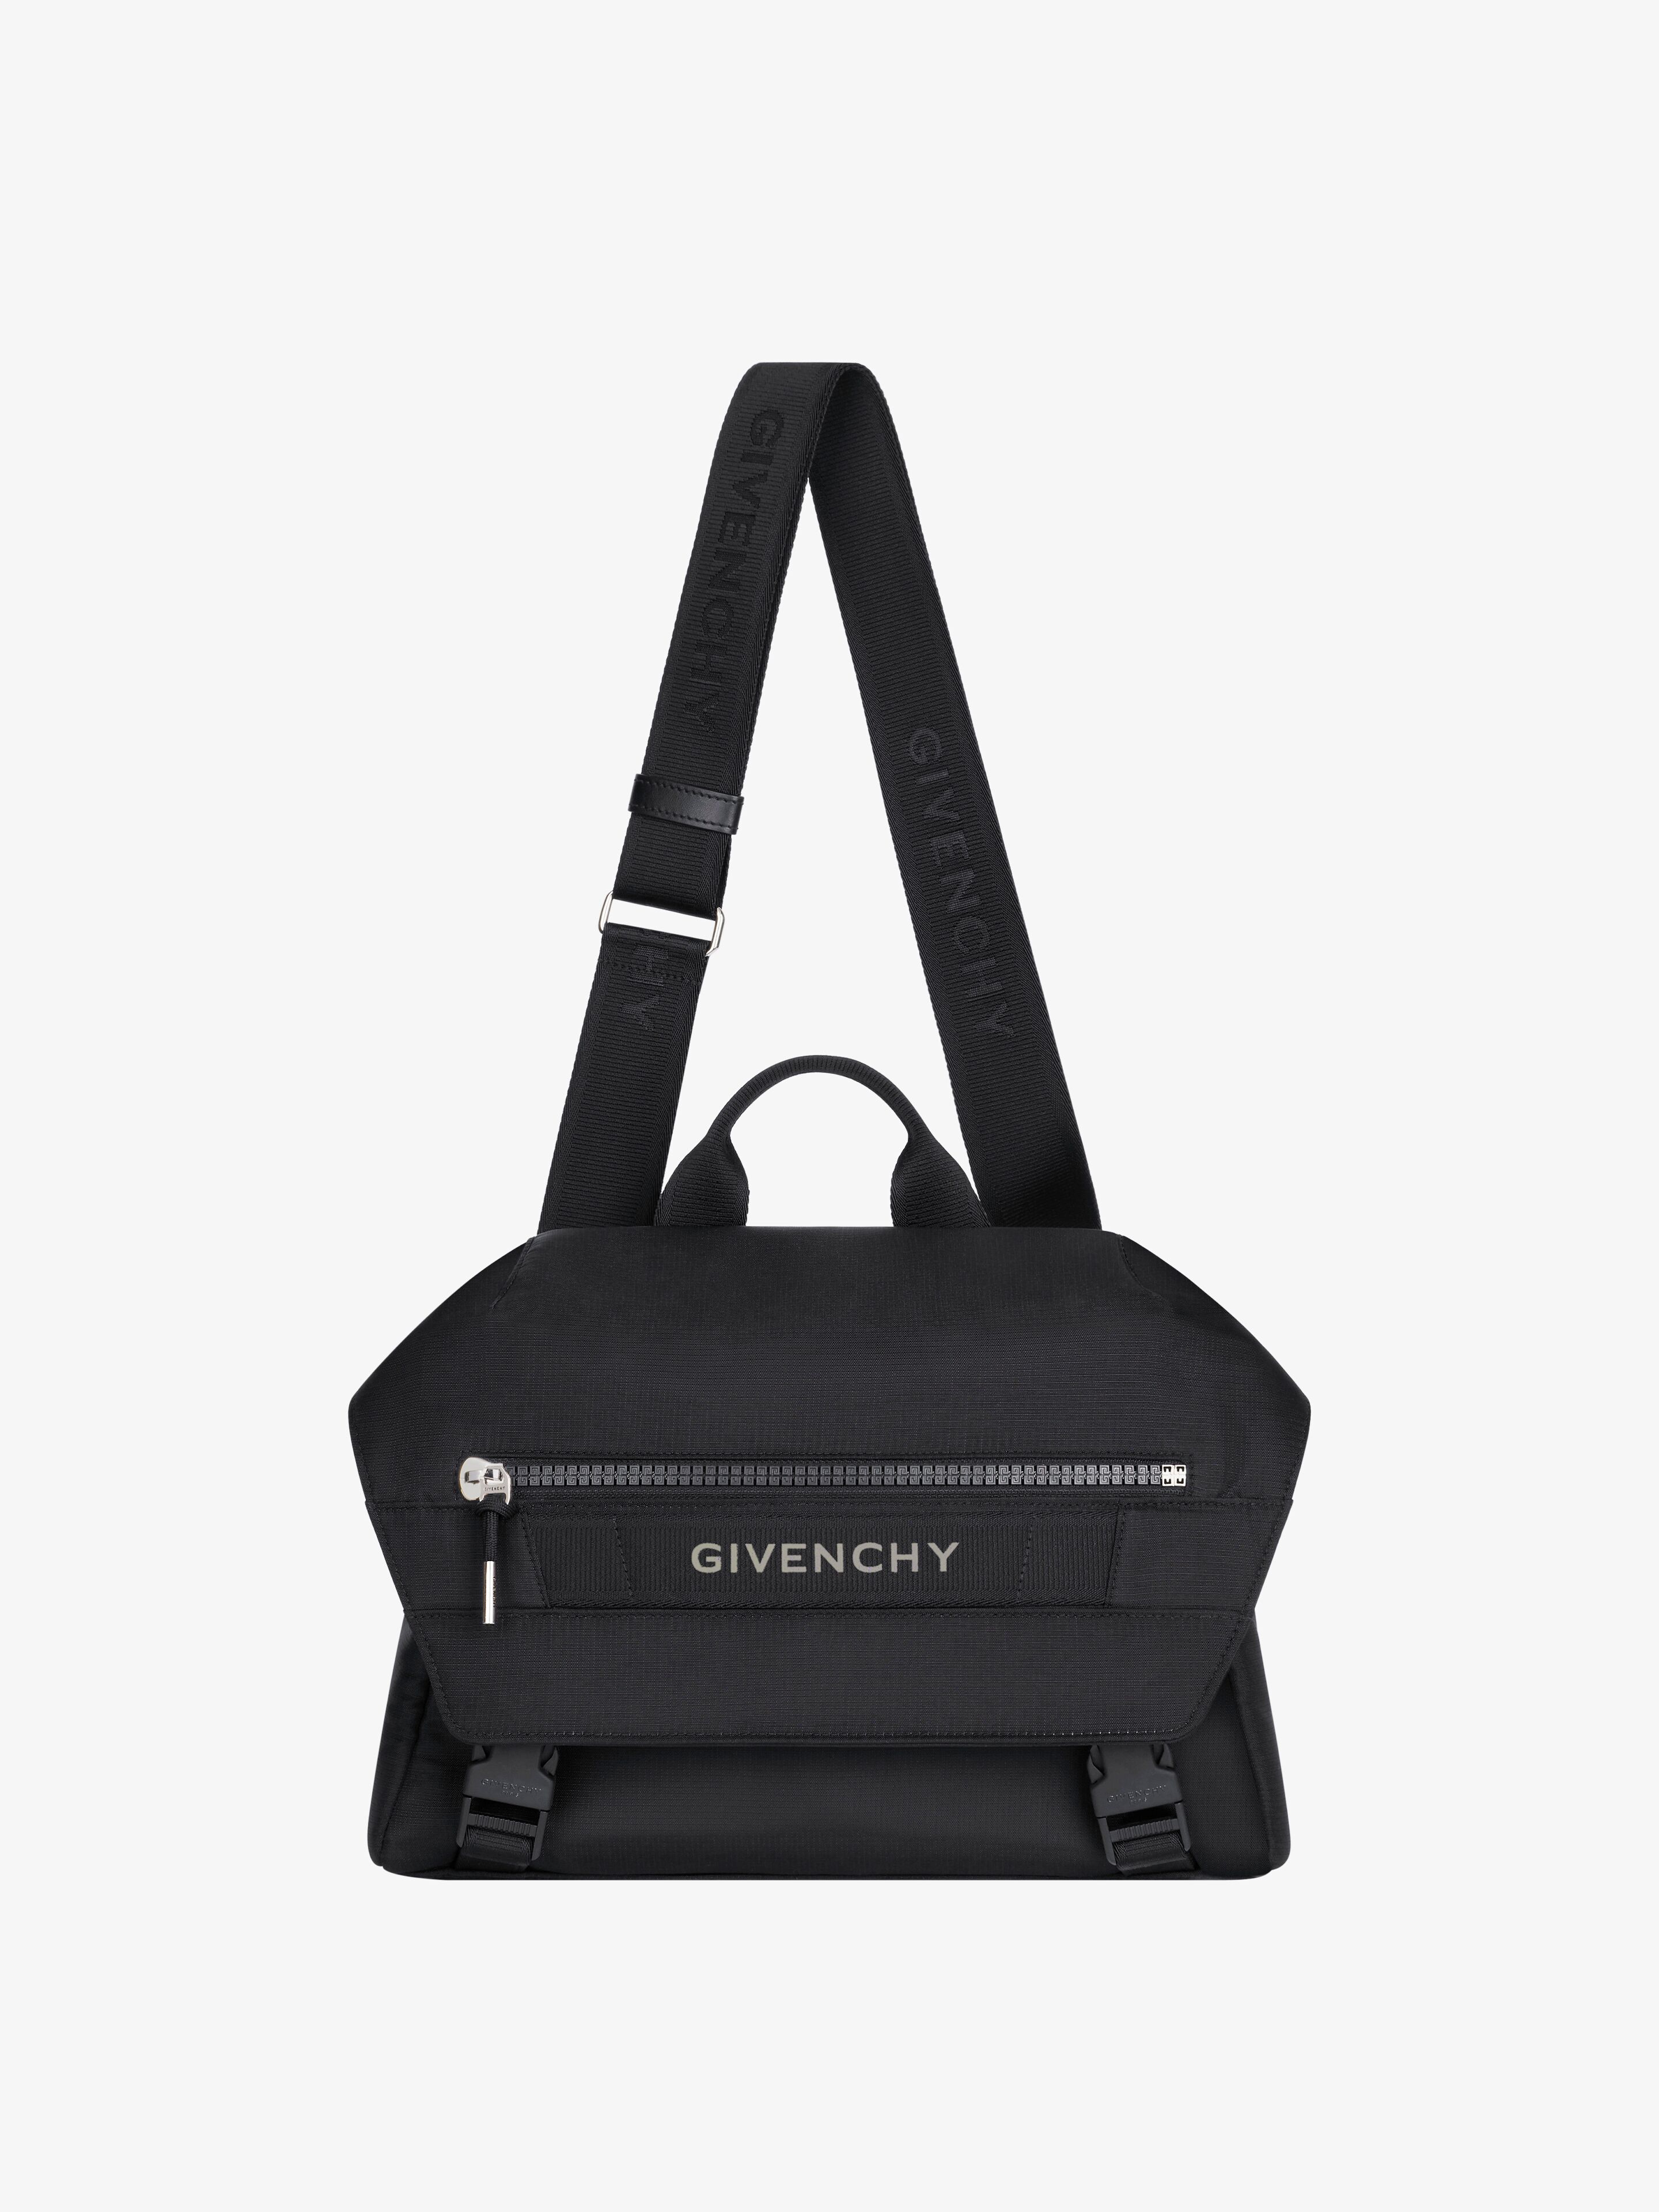 Givenchy Men's G-trek Messenger Bag In Nylon In Black